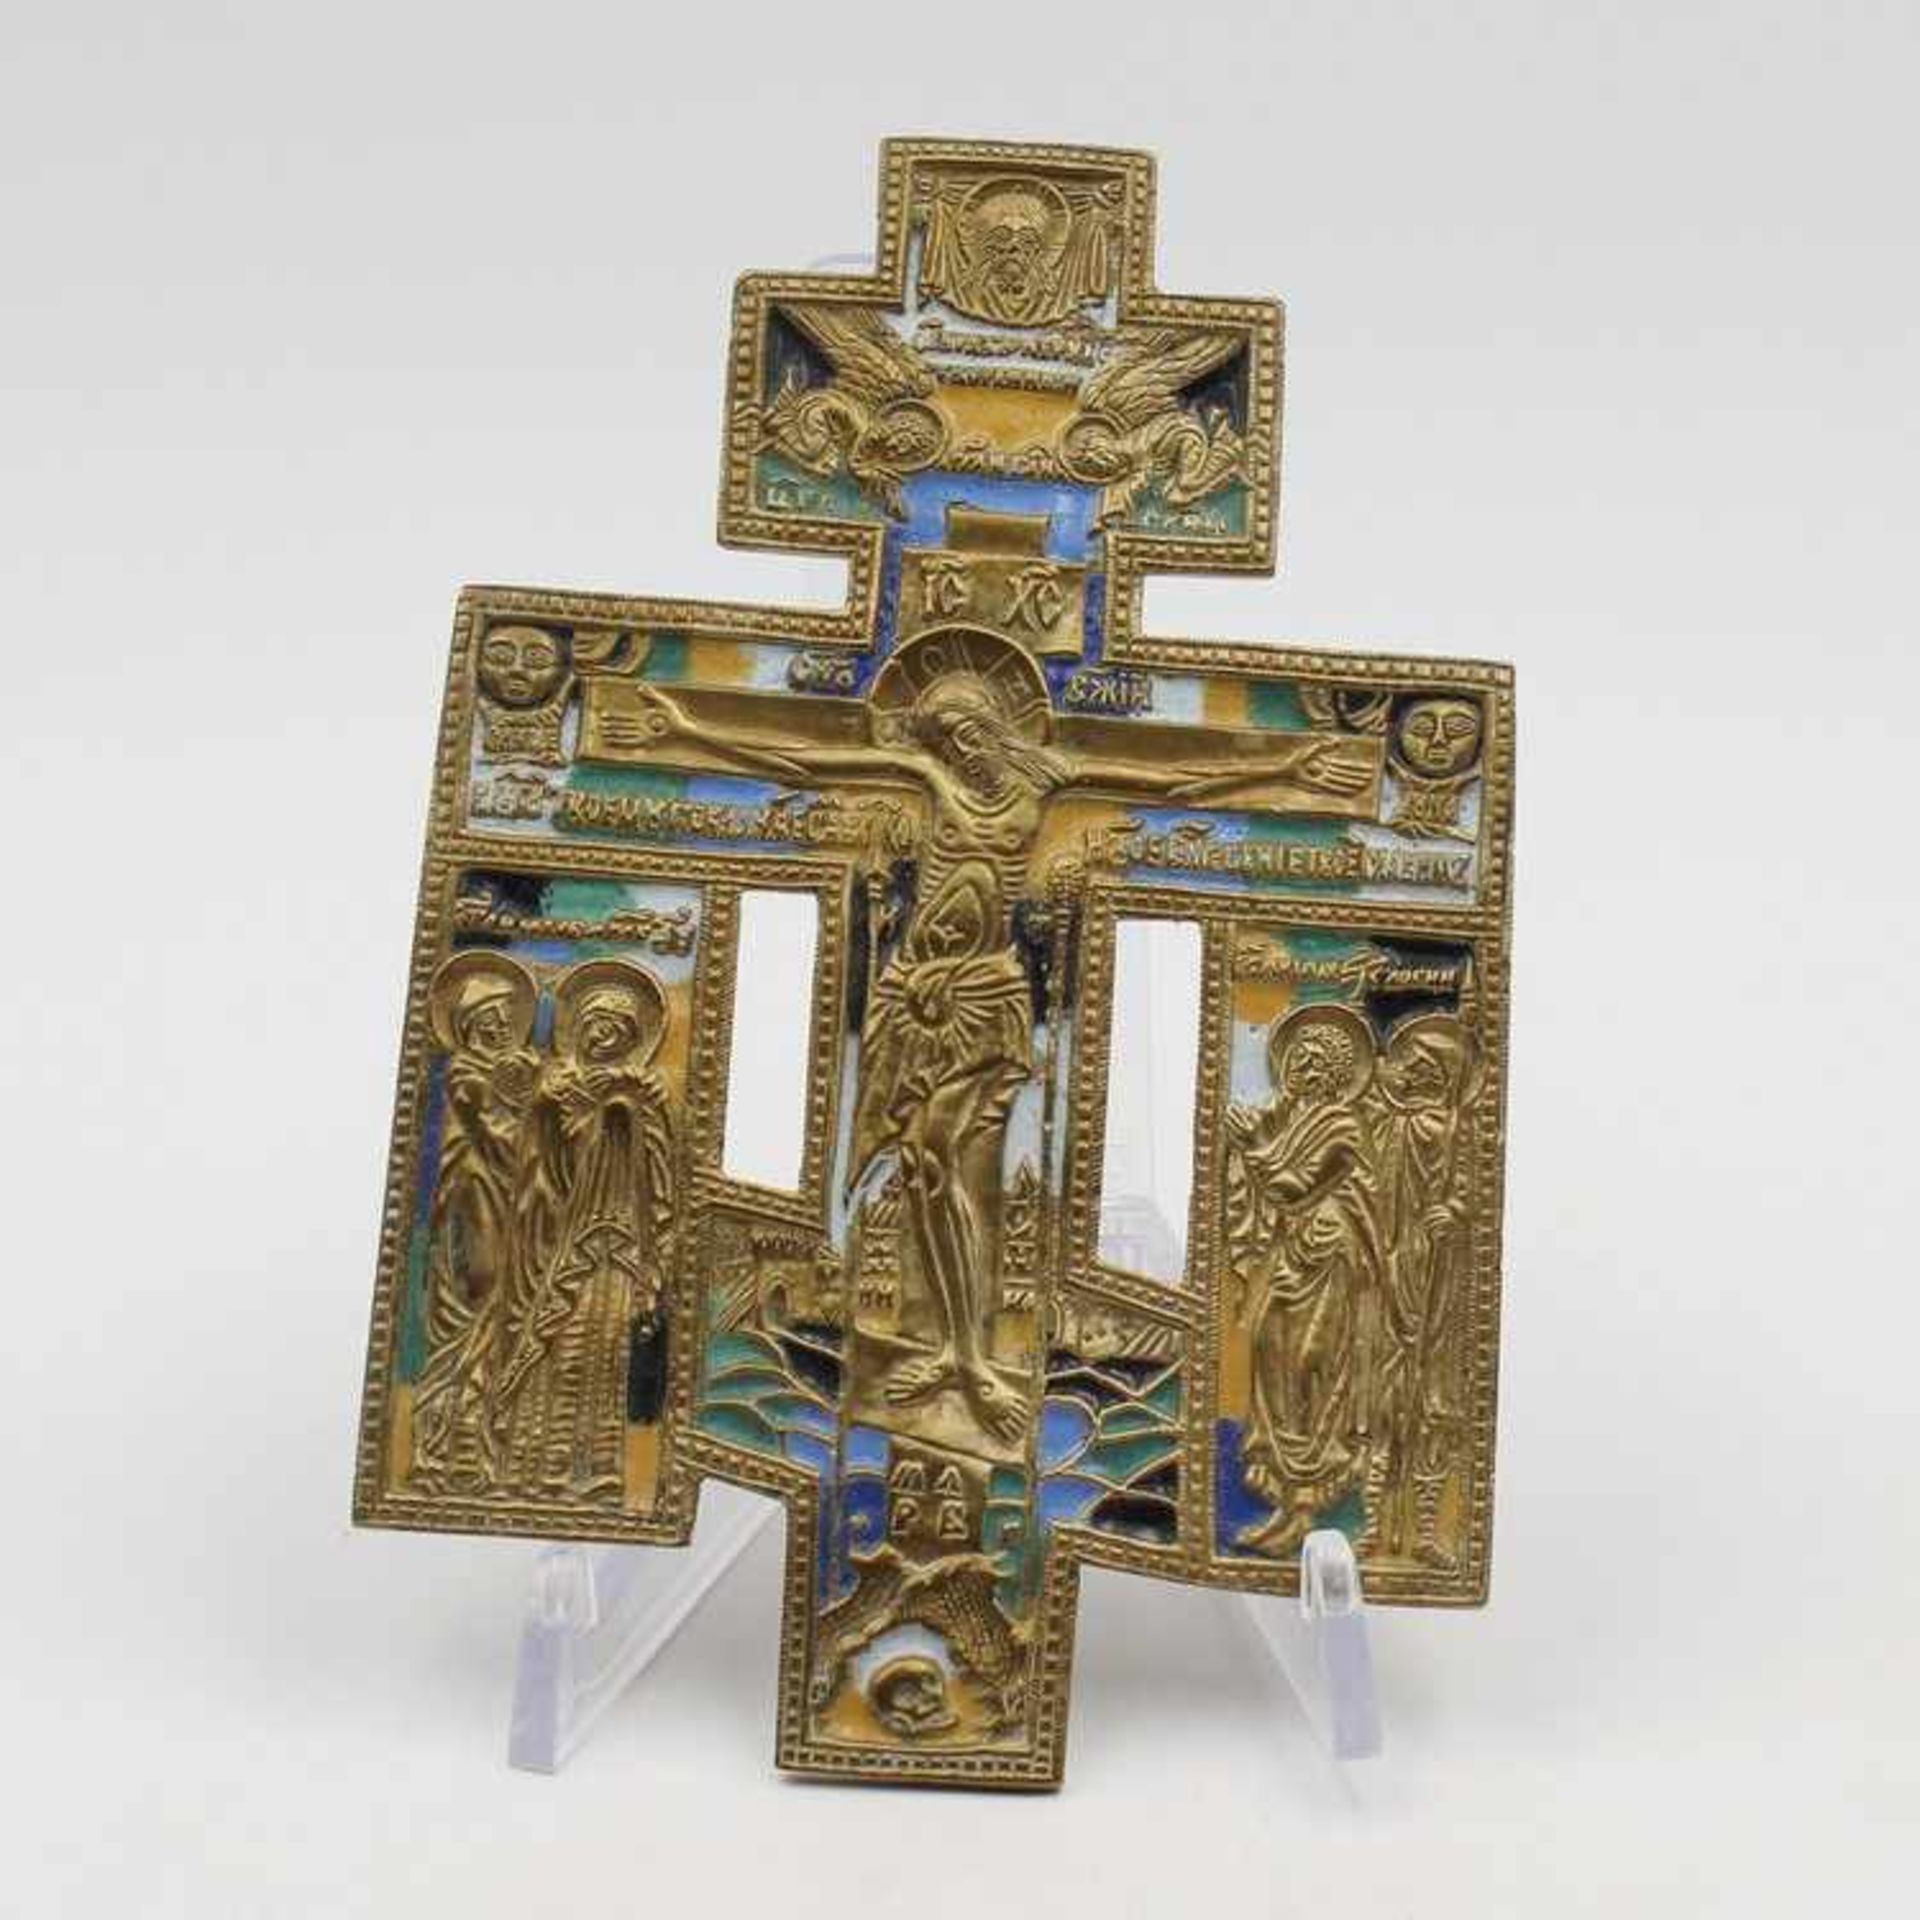 ReiseikoneRussland, Bronze/Messing, Emaille, reliefiert, durchbrochen, Kreuzigung mit